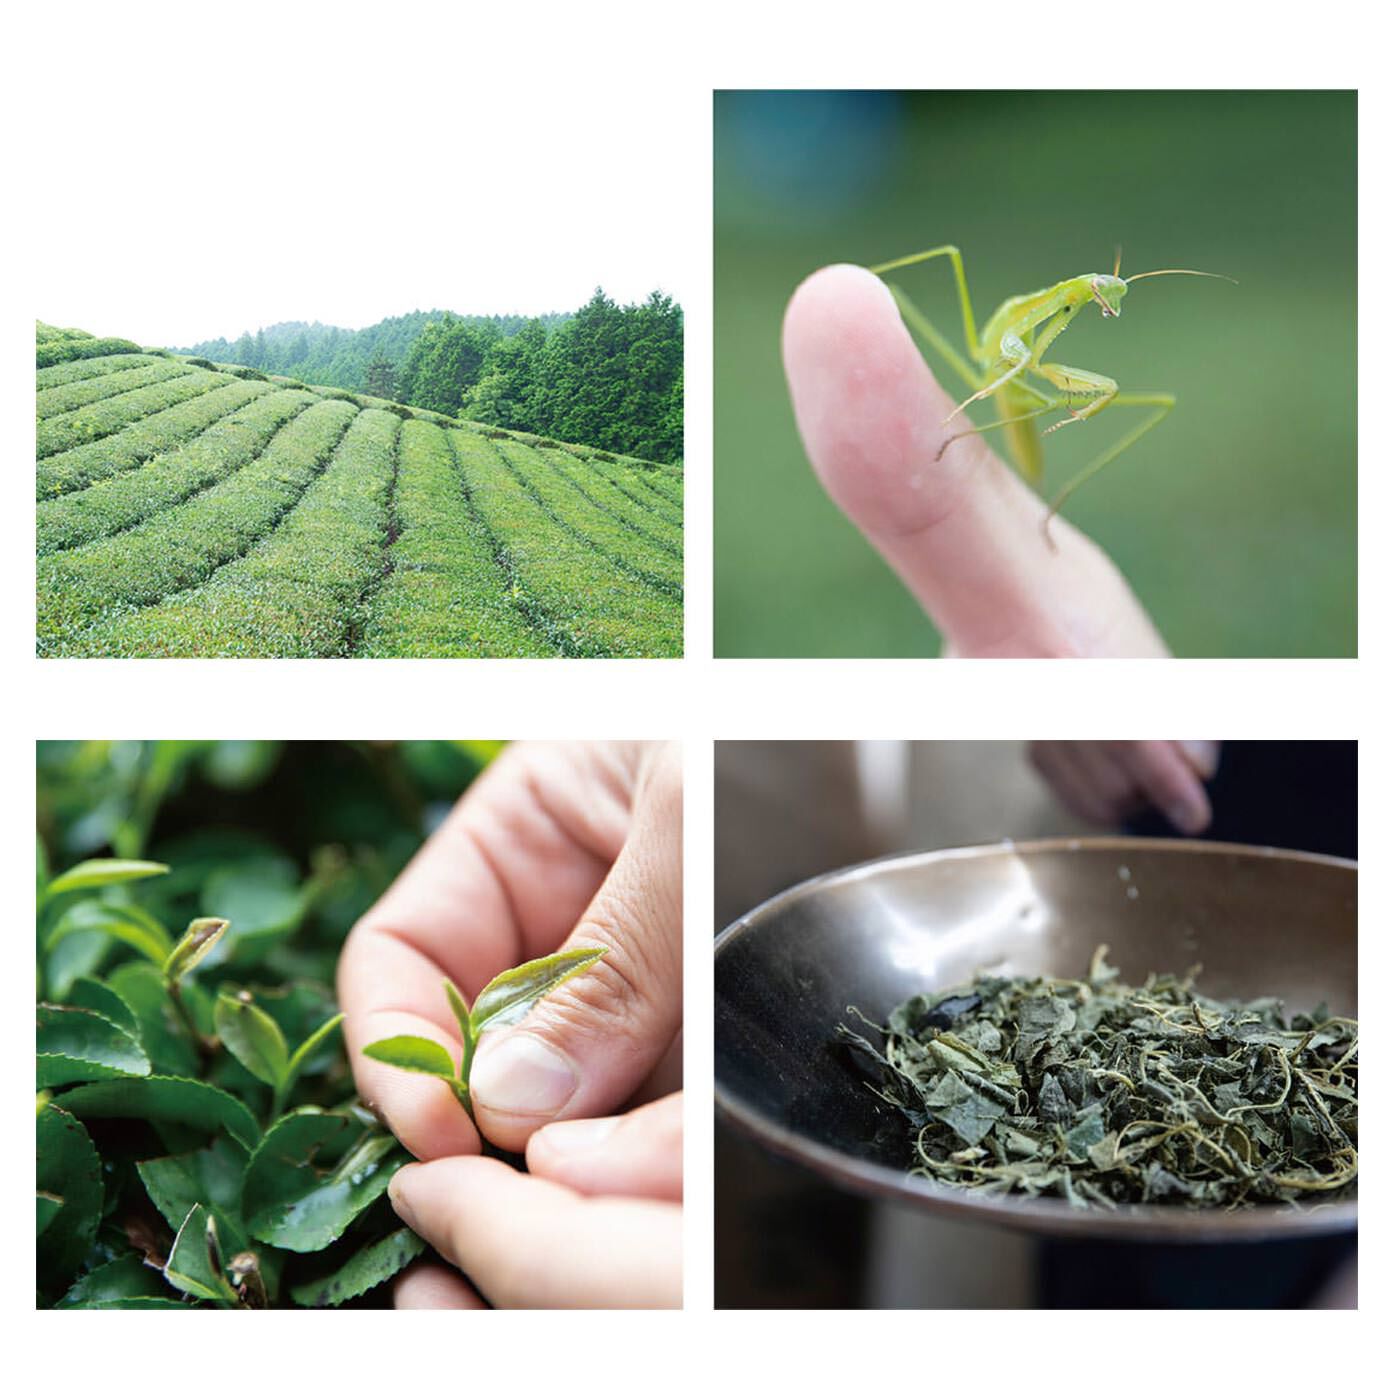 フェリシモの雑貨 Kraso|健一自然農園Ｘフェリシモ　豊かな未来をつくるお茶セット〈ティーバッグ〉の会|人がひとりで生きていけないように、お茶たちもお茶たちだけでは生きてはいけません。受粉を助ける蜂、落ち葉を食べて豊かな土をはぐくむミミズ……数えきれないさまざまないのちとの関係の中でお茶ははぐくまれます。そんなかけがえのない日本の里山生態系は、いちばん身近で大切なものなのにどんどん失われようとしているこの宝物を残し、未来へつなぎたいという想いから日々お茶を作っています。みなさまが自然栽培茶を手に取ってくださることは、確かで喜ばしい一歩、まさしく「豊かな未来」を一緒につくってゆくことにつながっていると深く感じます。いのちのつながりから生まれる豊かな未来をそっと思い浮かべながら、心和むお茶時間をお楽しみください。　伊川健一